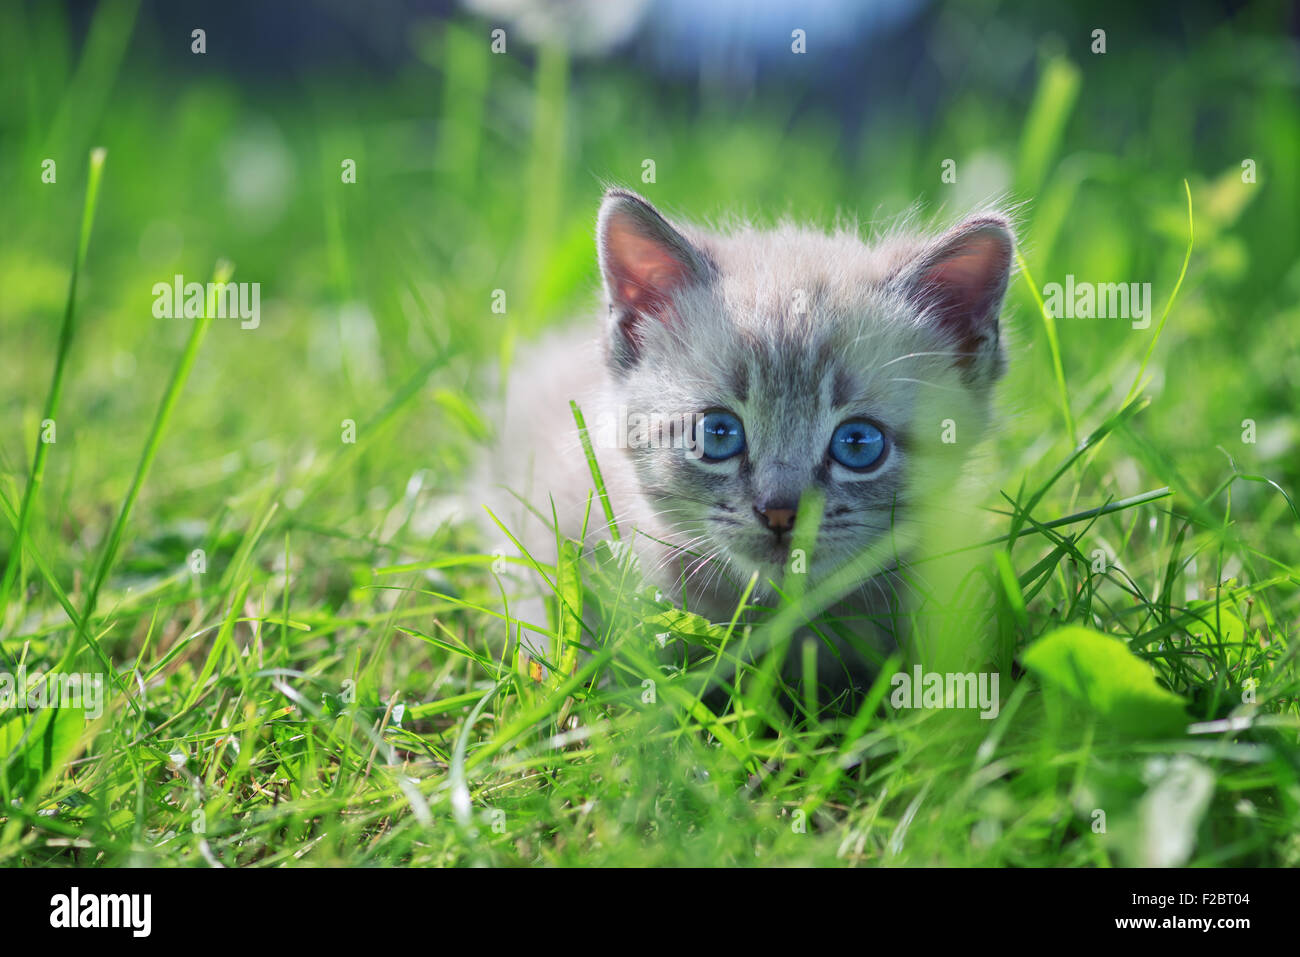 kitten on grass close up Stock Photo